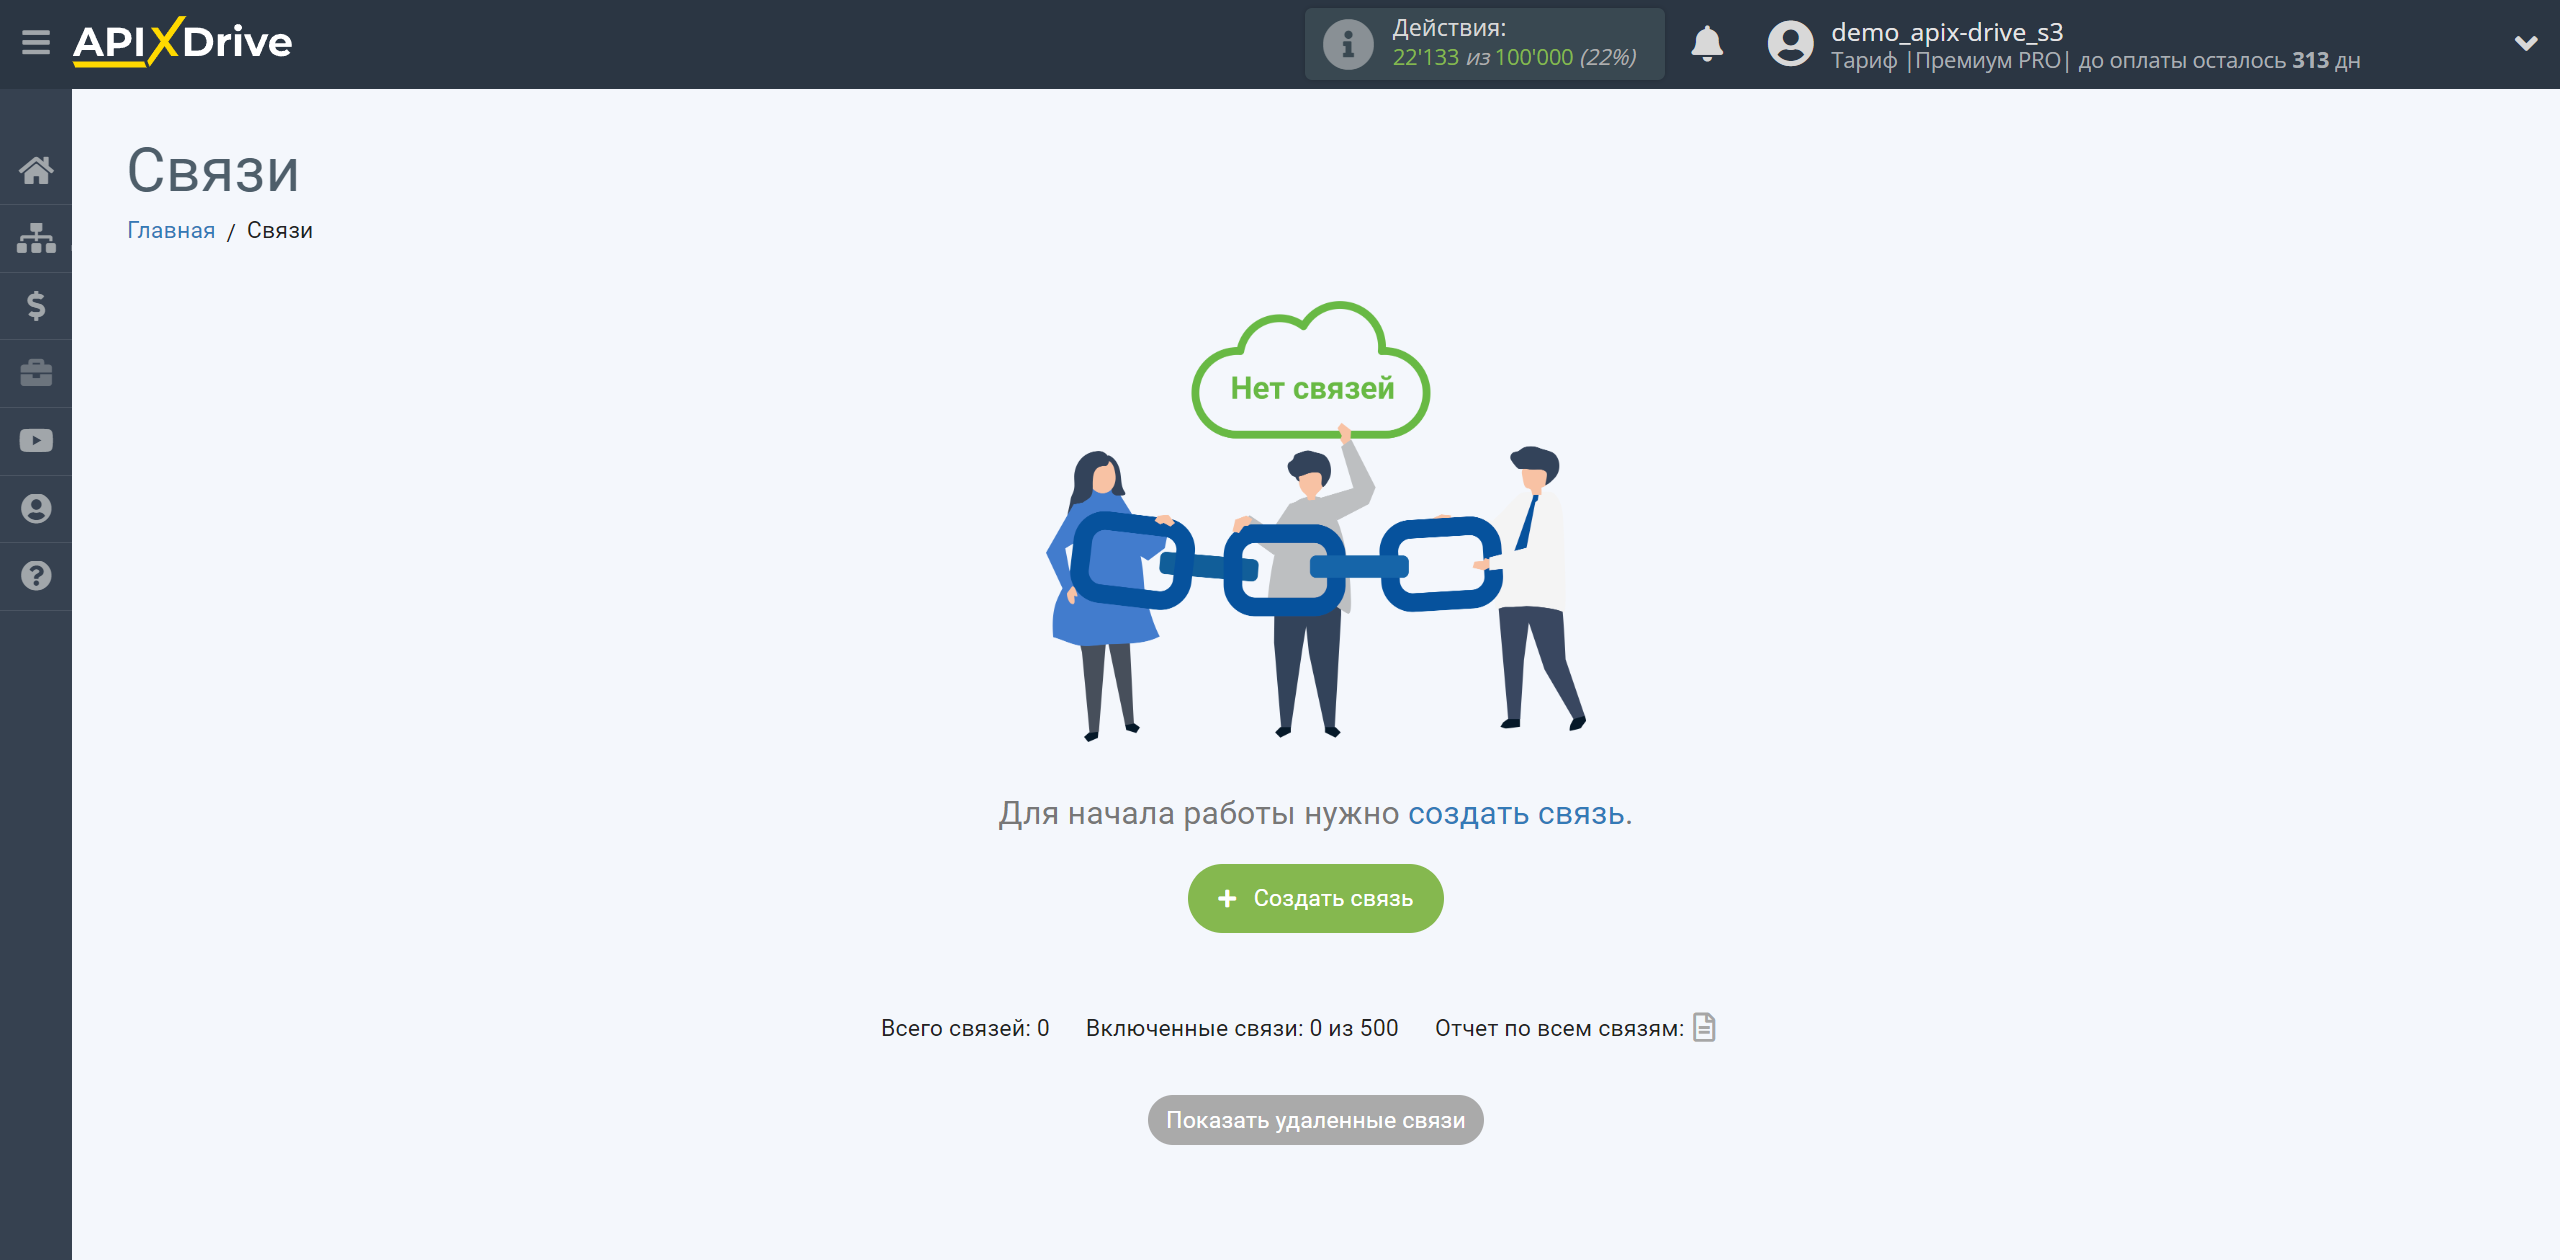 HubSpot Обновить Сделку / Создать Сделку | Создание связи